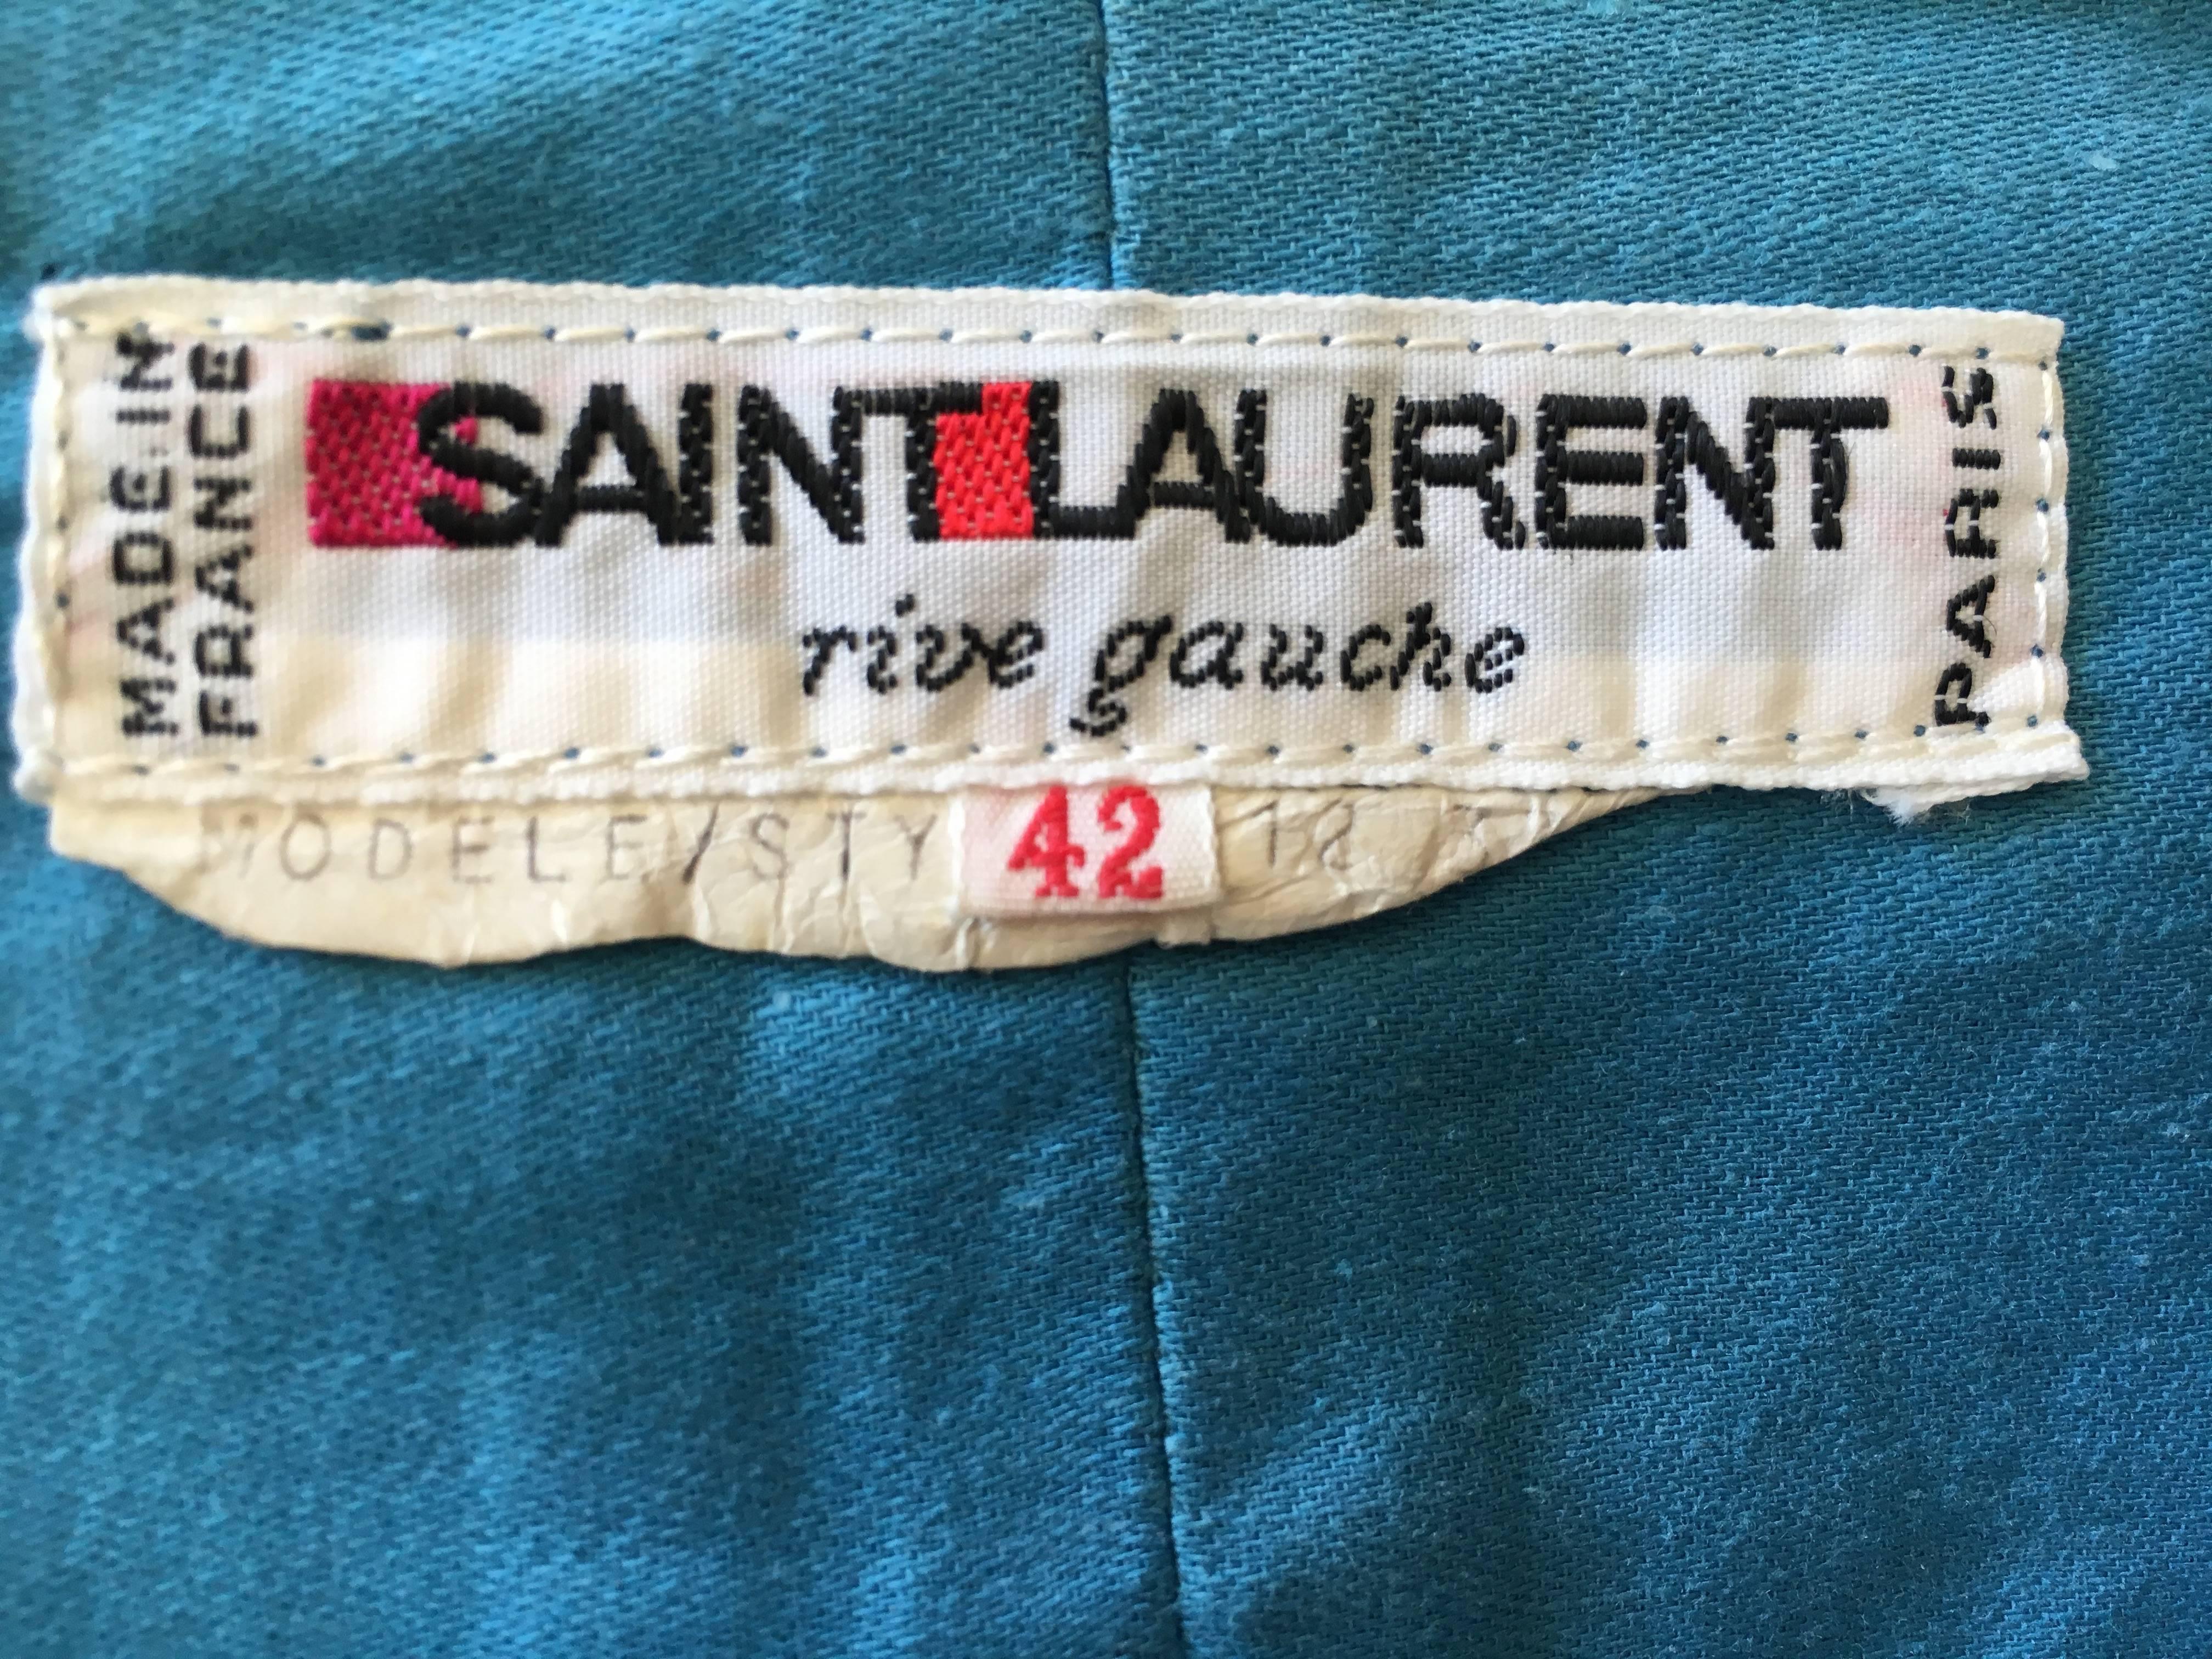 Yves Saint Laurent Rive Gauche 1970's Turquoise Silk Moire Corset Lace Top For Sale 3